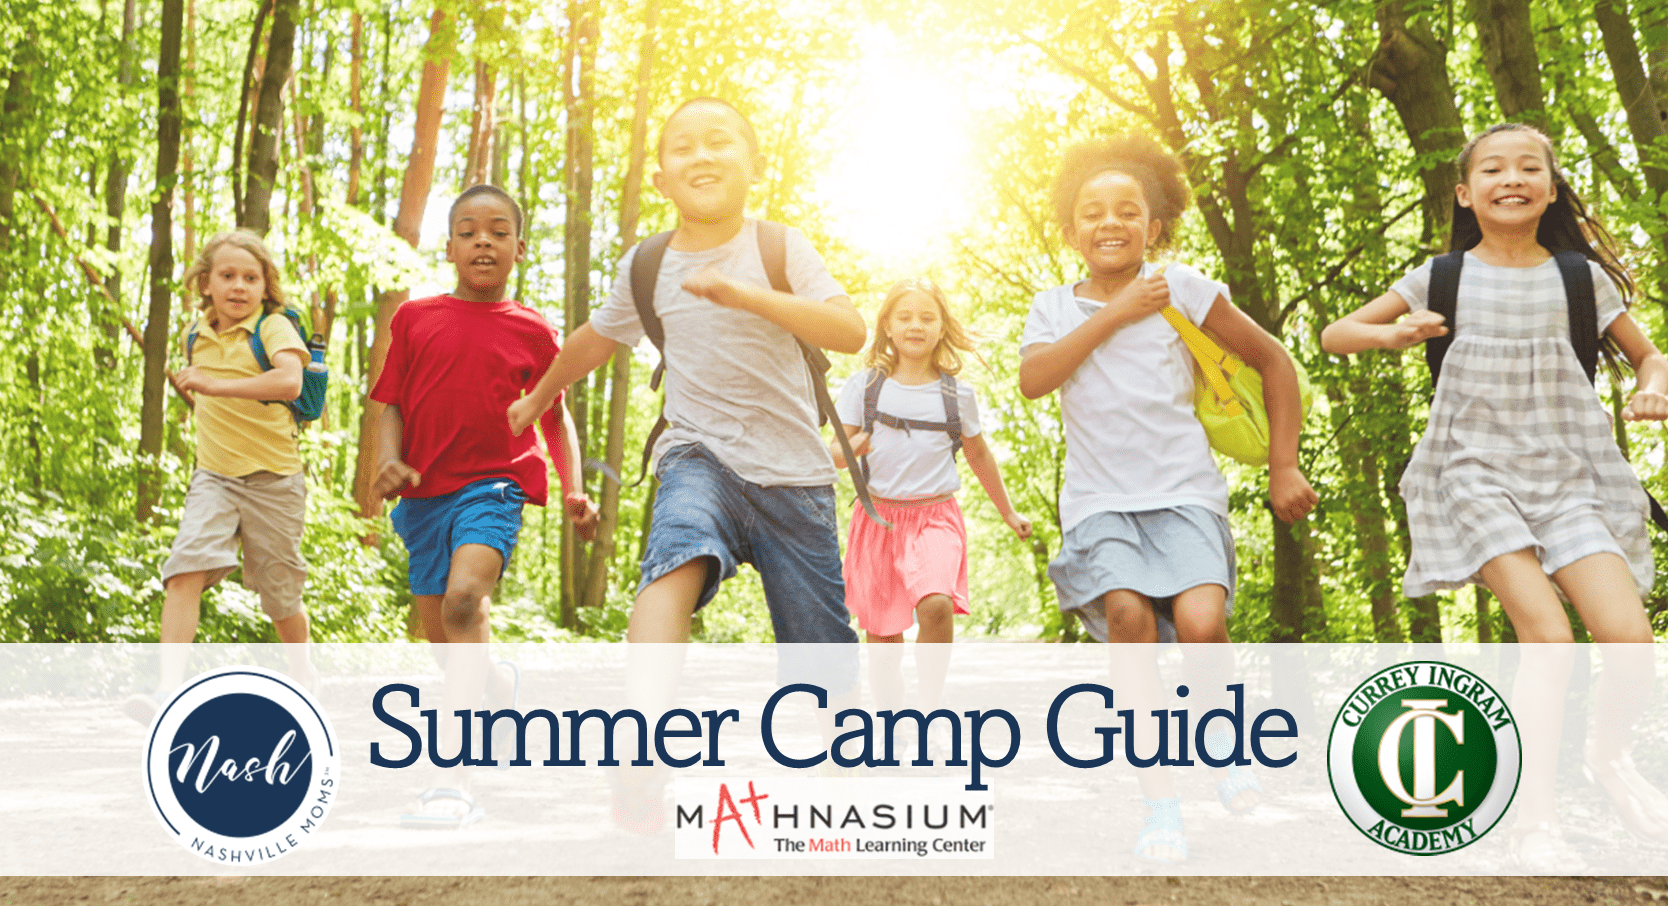 Nashville Summer Camp Guide